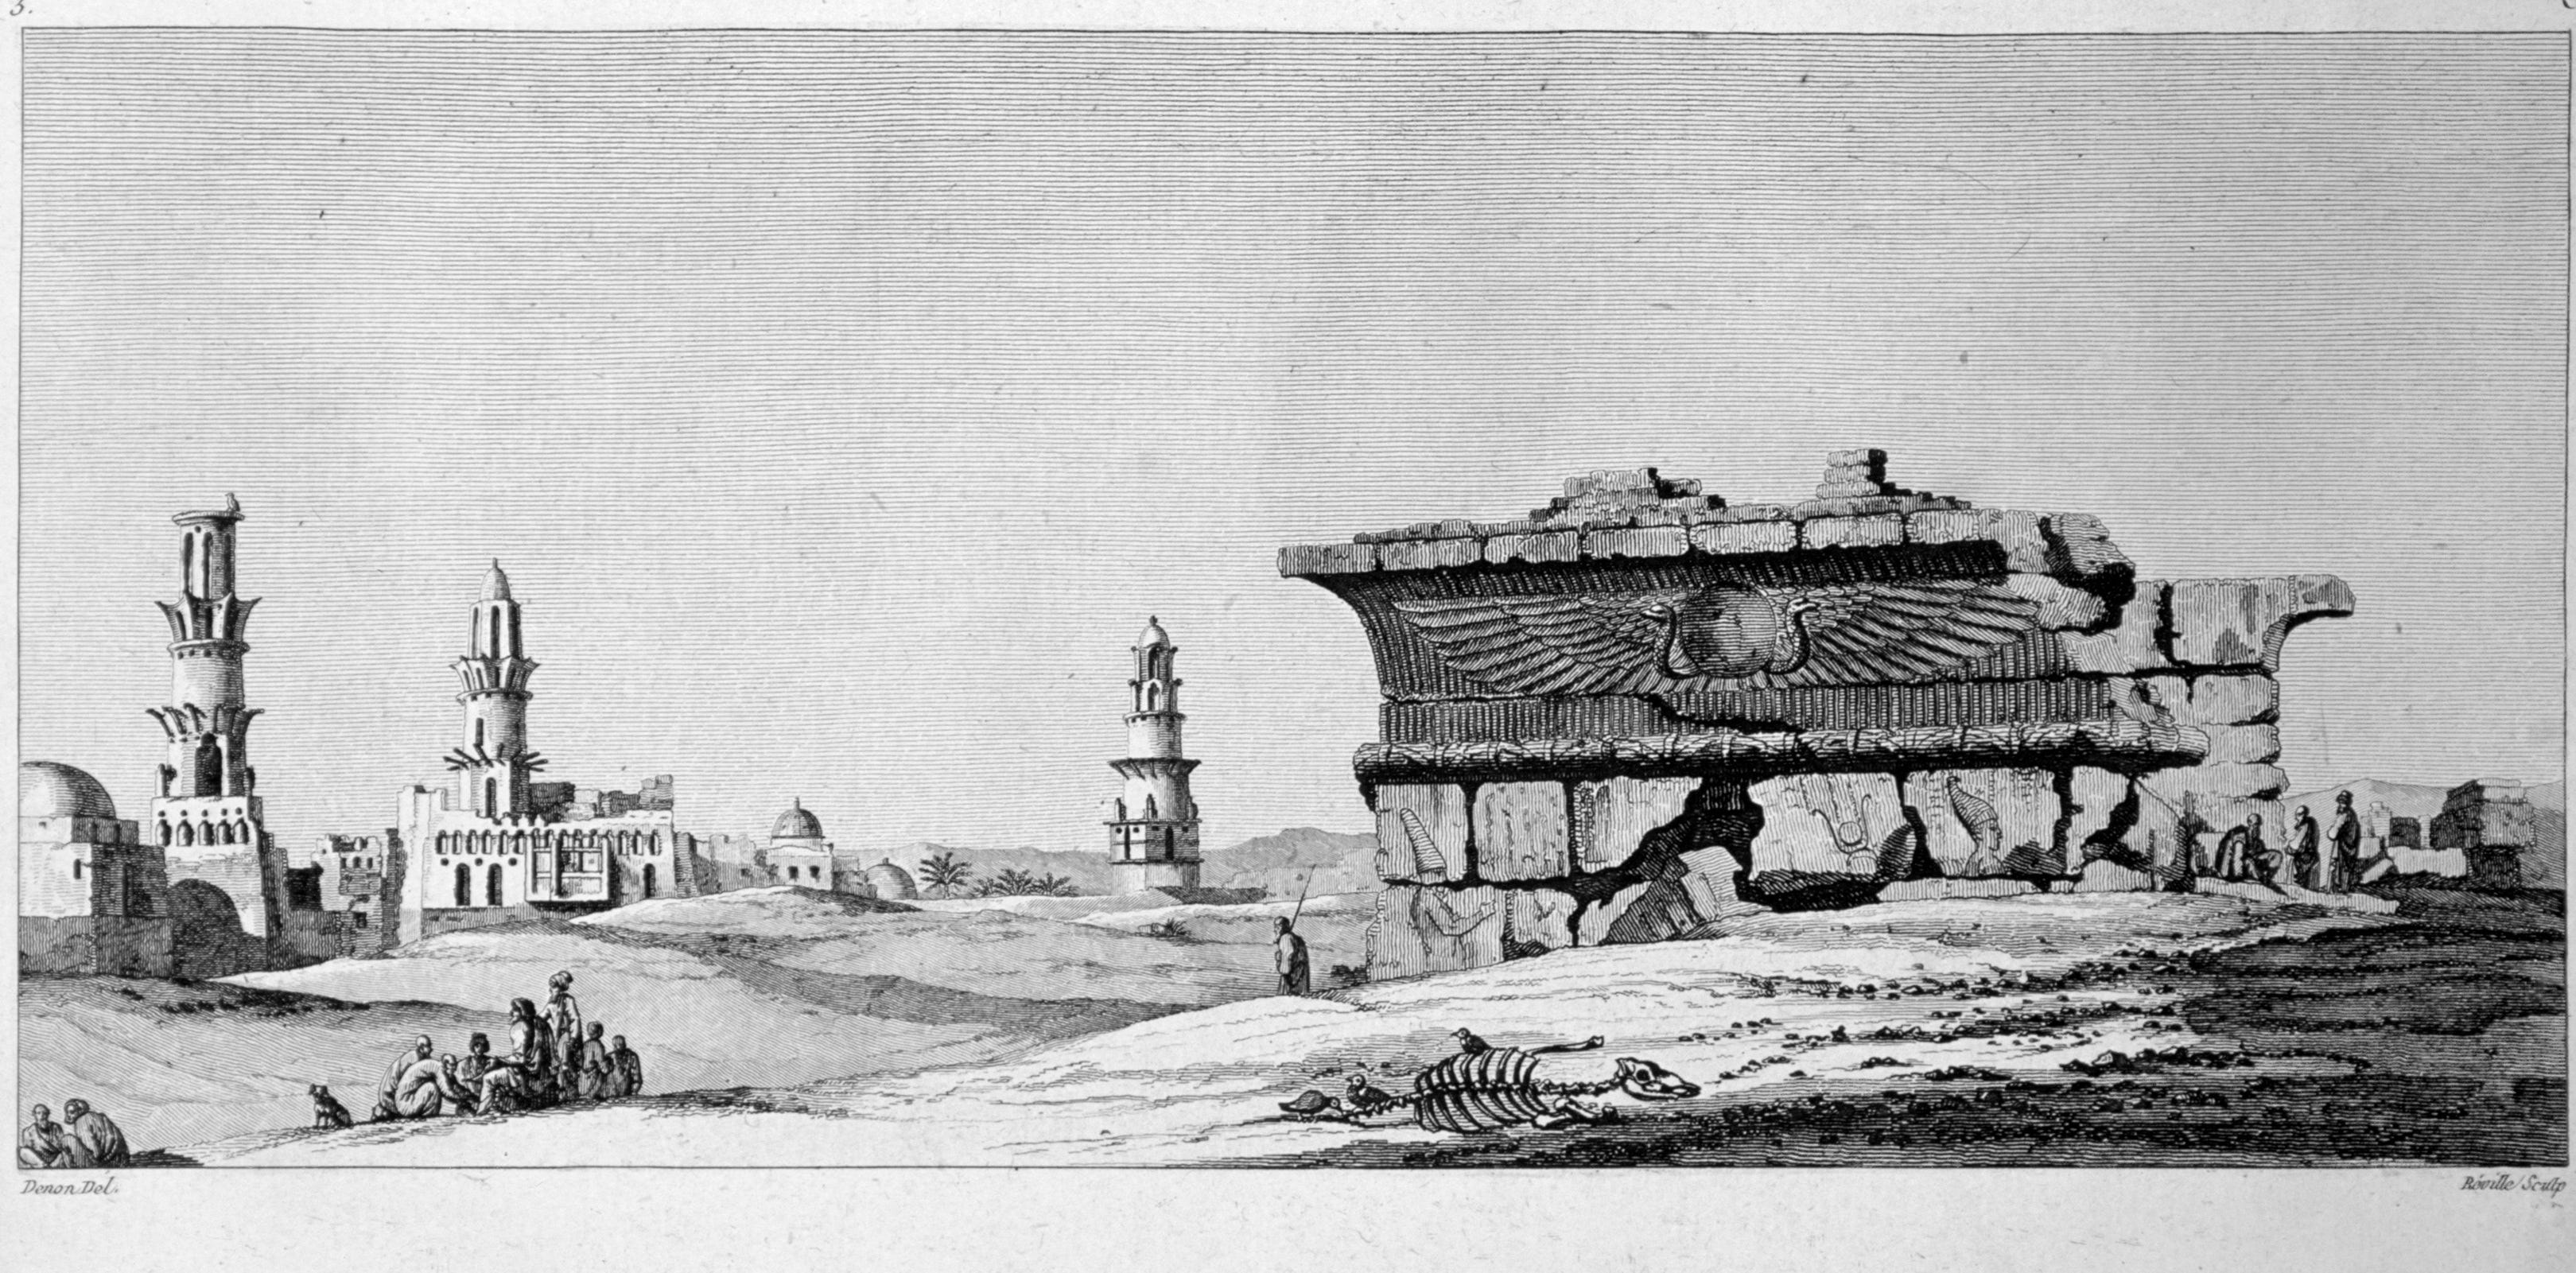 Zeichnung des Edfu-Tempels in Ägypten von Vivant Denon, die Risse in der Struktur und größere Türme im Hintergrund zeigt